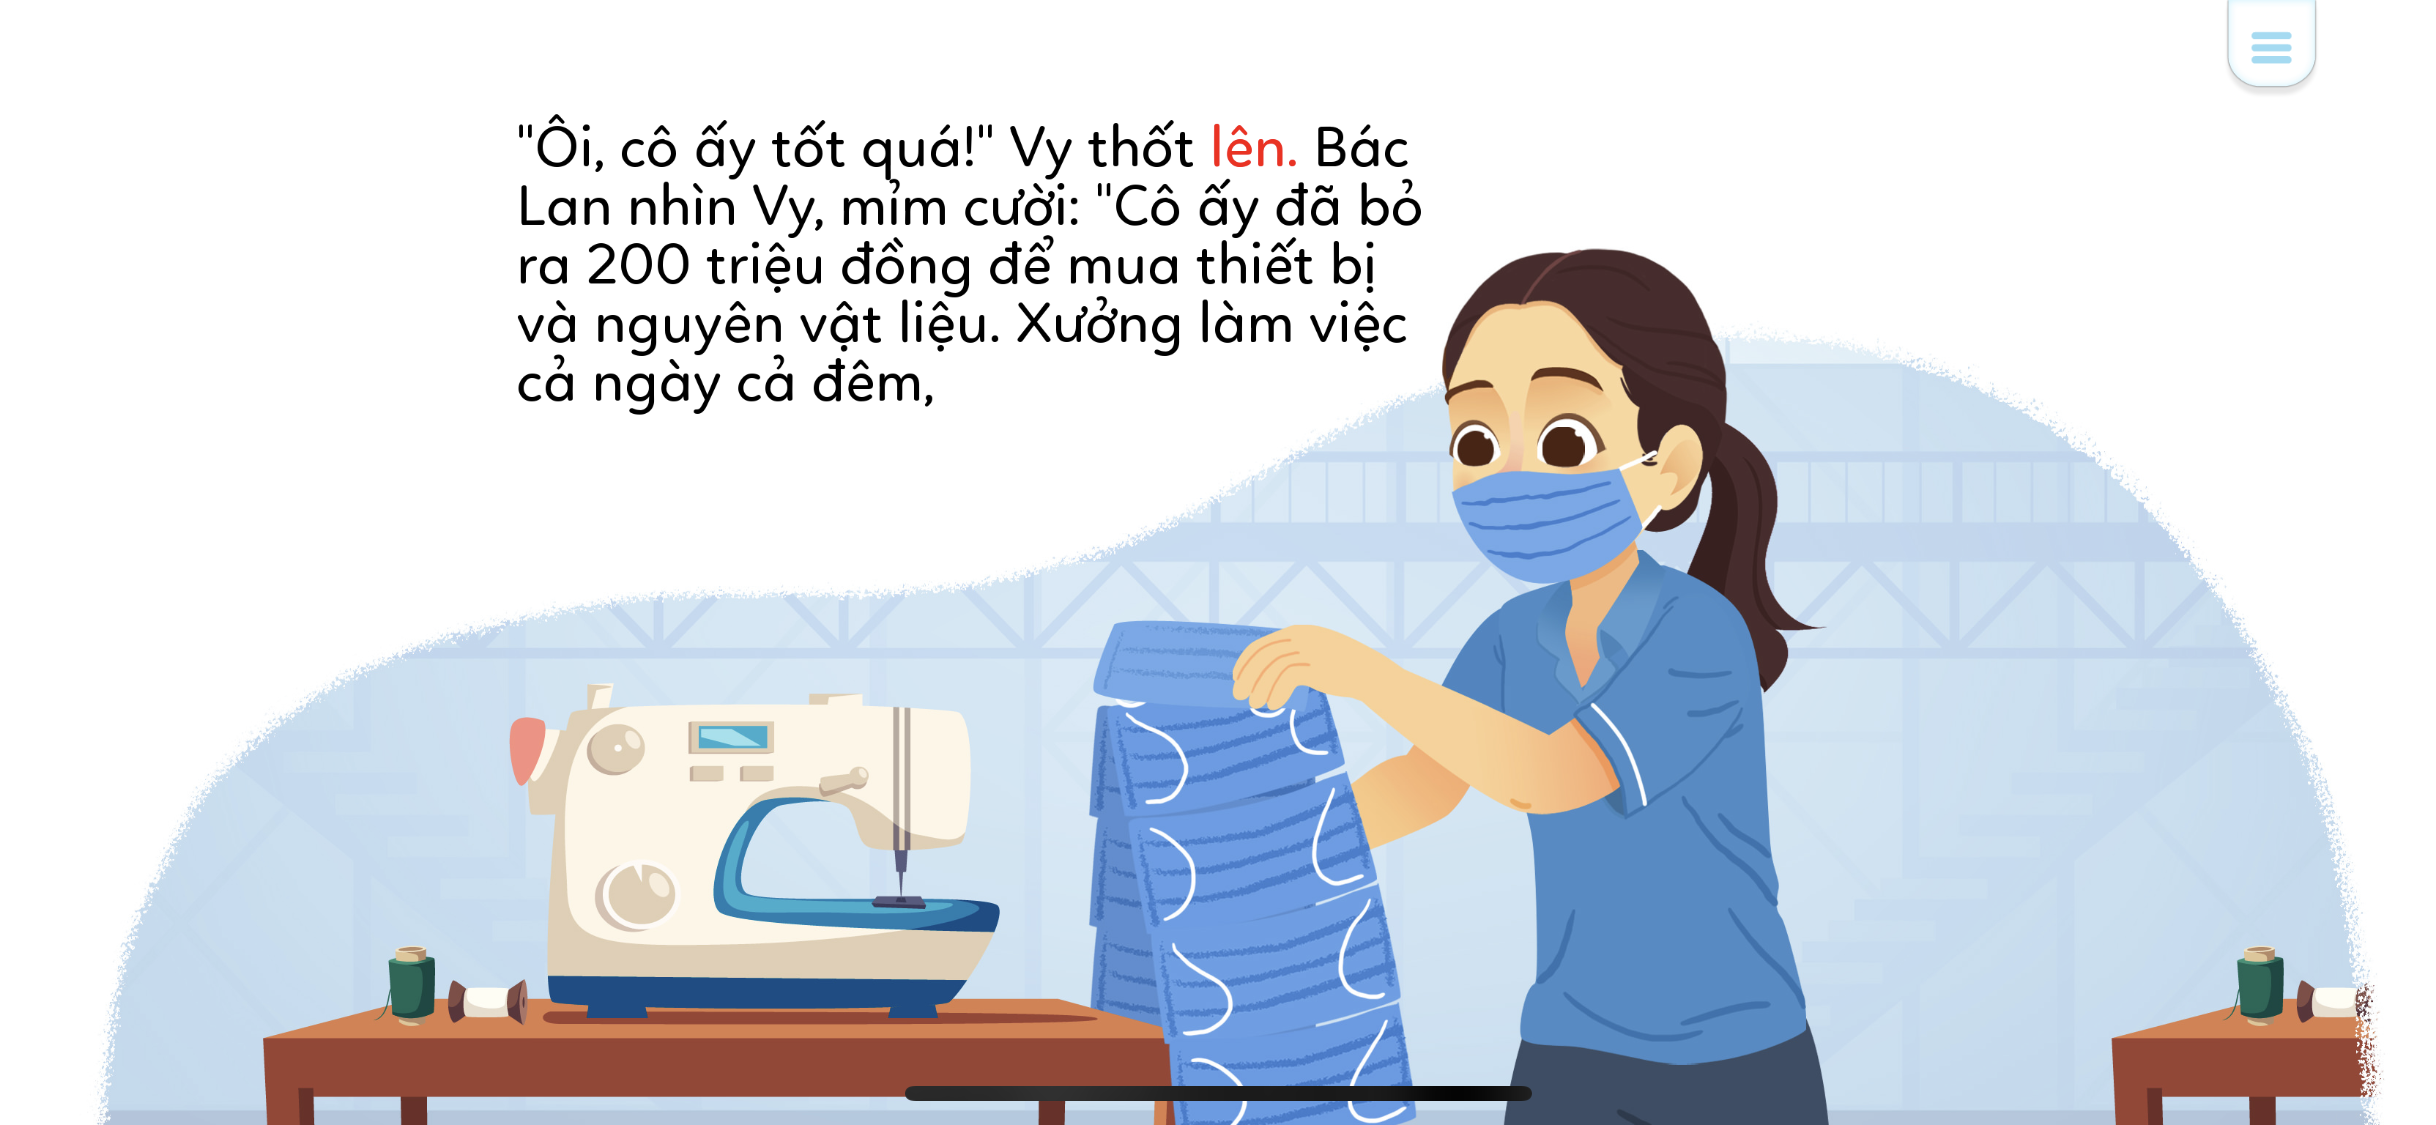 Phiên bản tiếng Việt được viết  mang đến cho các em không chỉ những kiến thức xã hội “nóng hổi” mà còn các từ vựng, cách hành văn tiếng Việt theo các độ tuổi về chủ đề này.